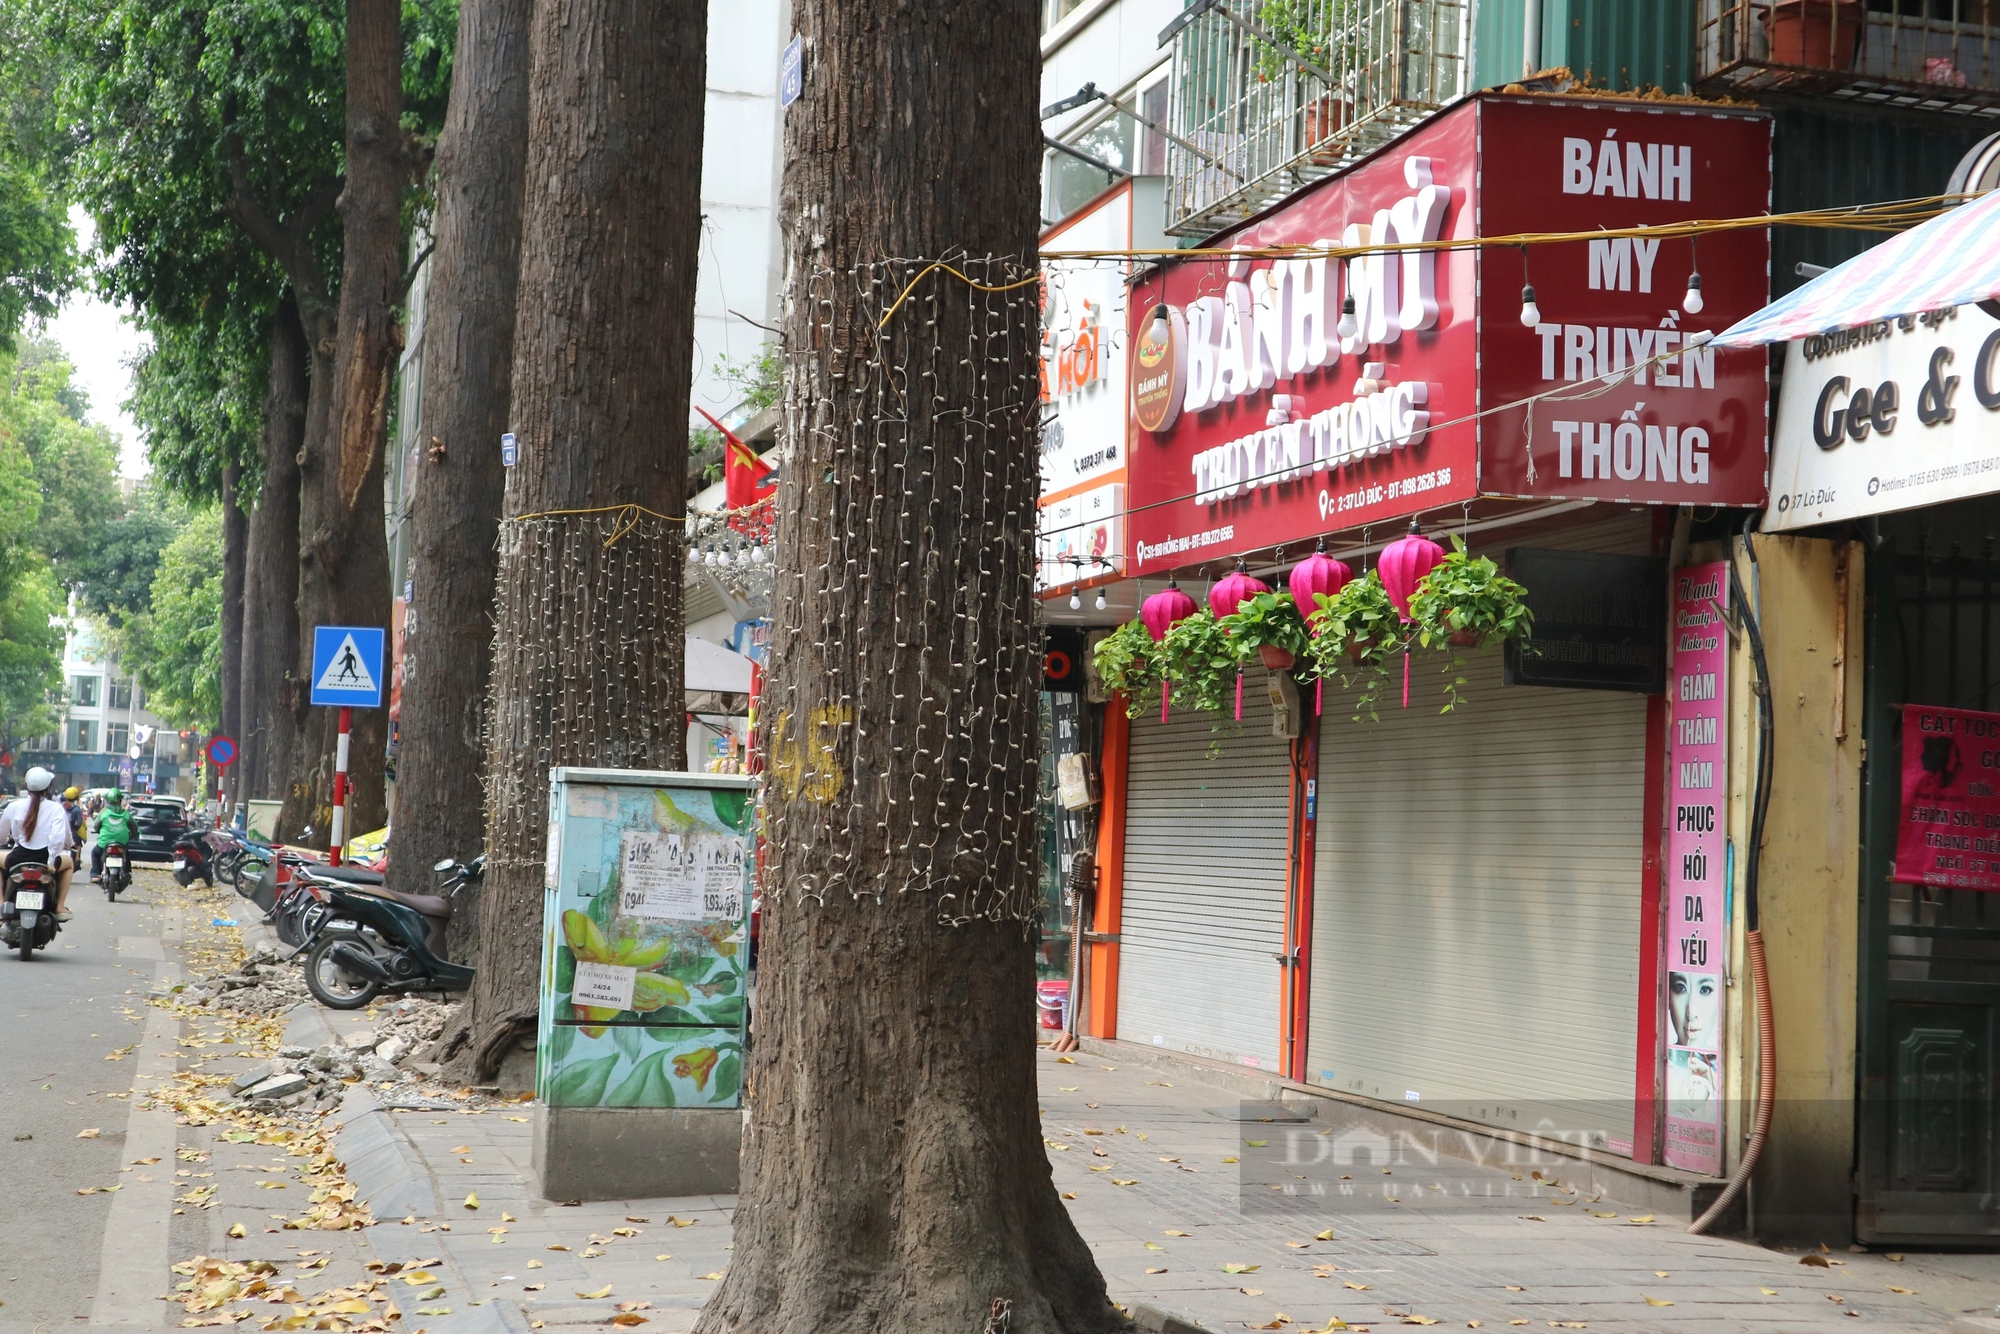 Mục sở thị hàng cây sao đen tại Hà Nội sau khi được  "giải cứu"- Ảnh 6.